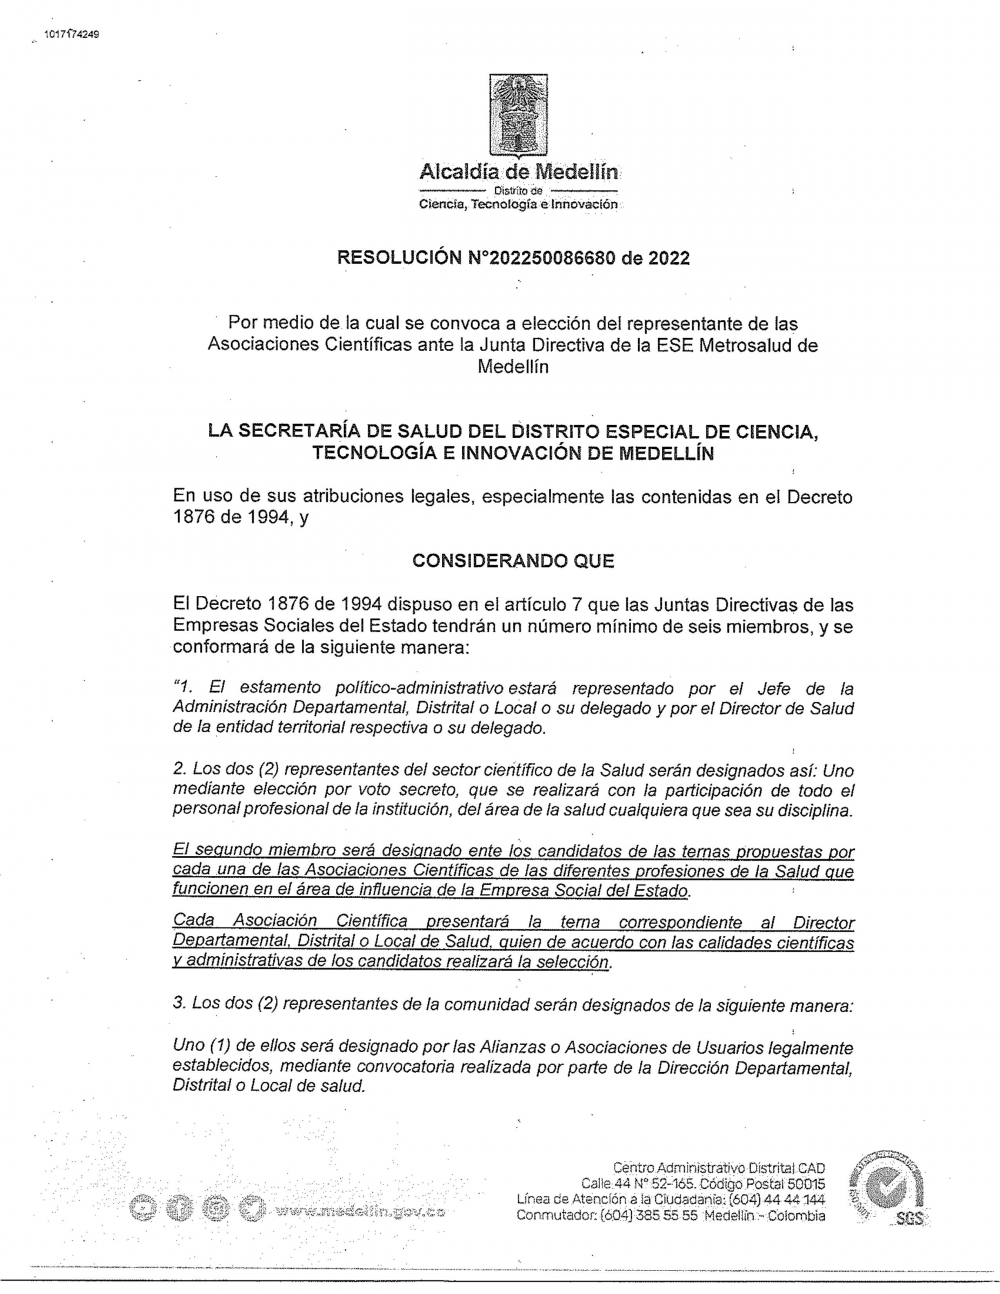 Se convoca a elección del representante de las Asociaciones Científicas ante la Junta Directiva de la ESE Metrosalud de Medellín